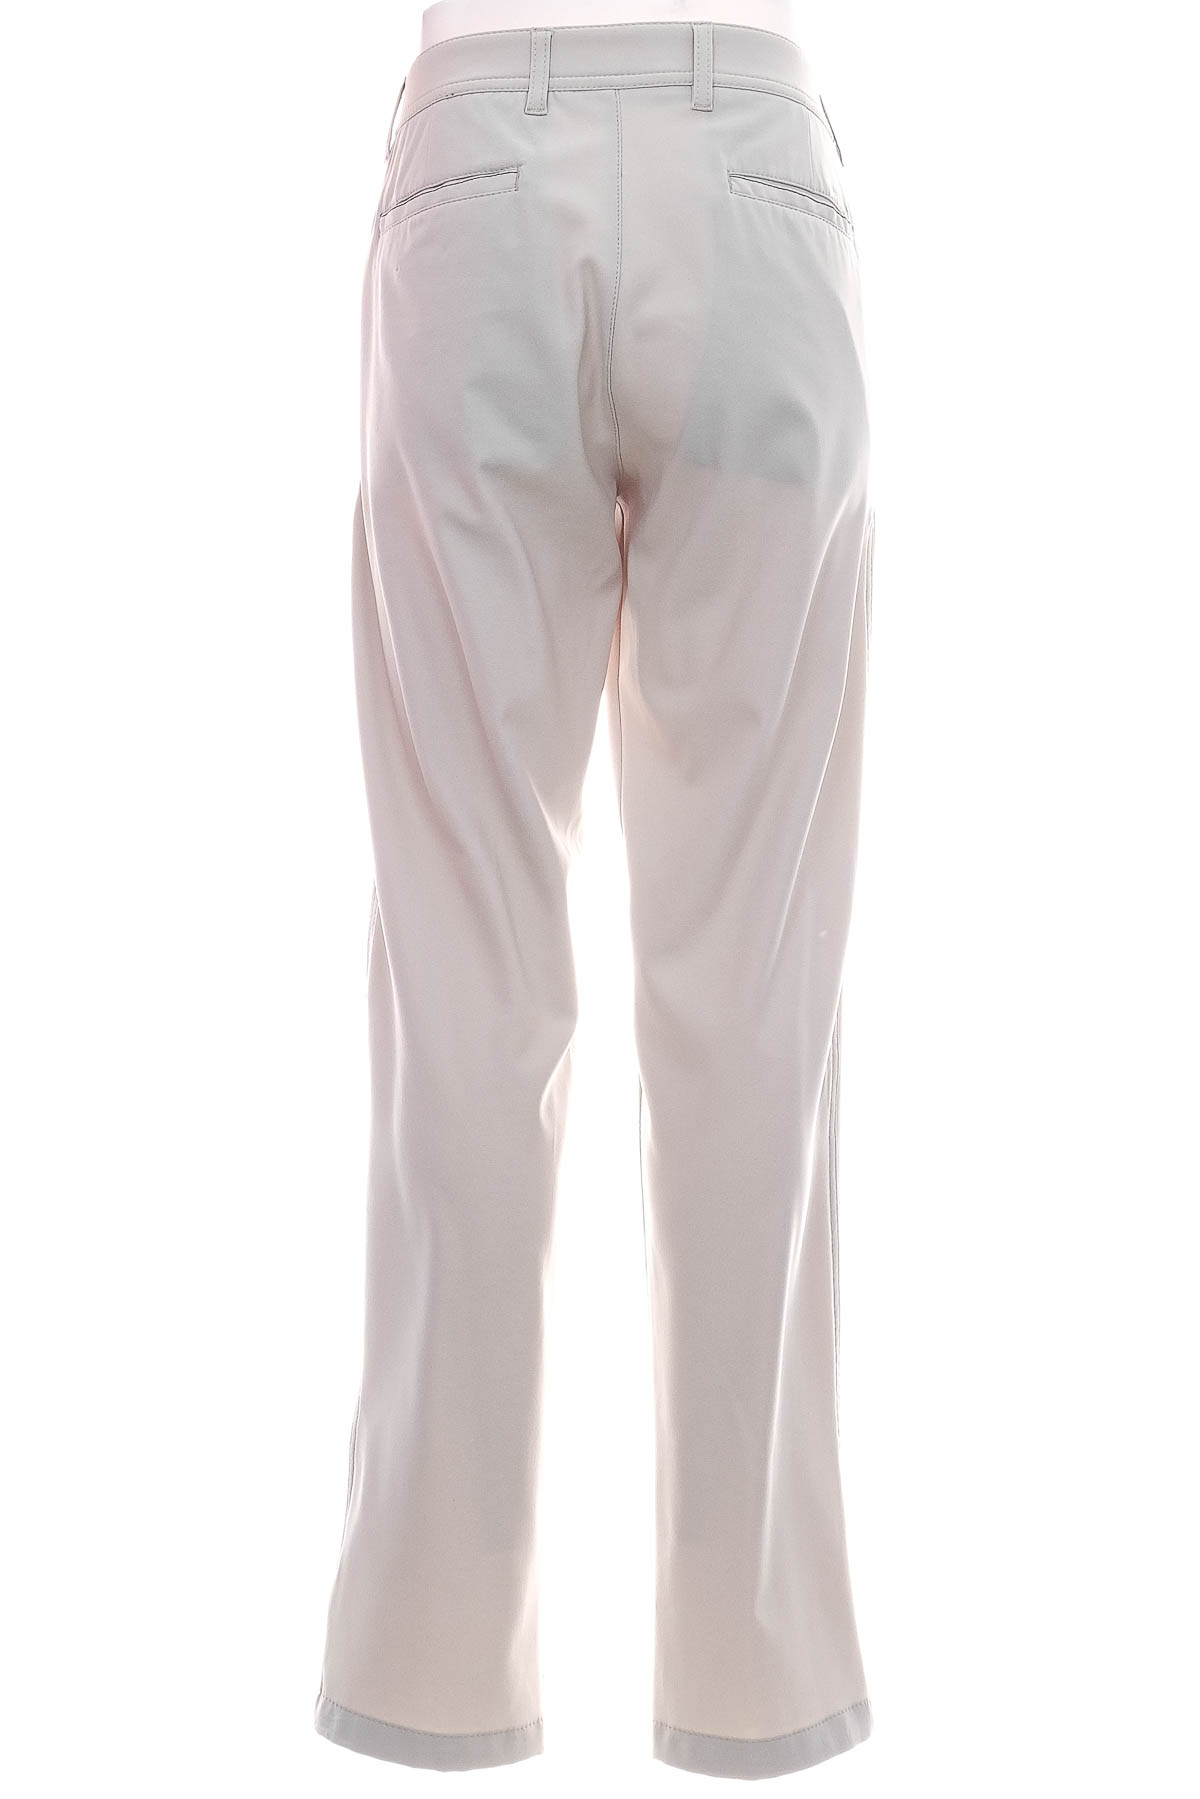 Pantalon pentru bărbați - BRAX GOLF - 1